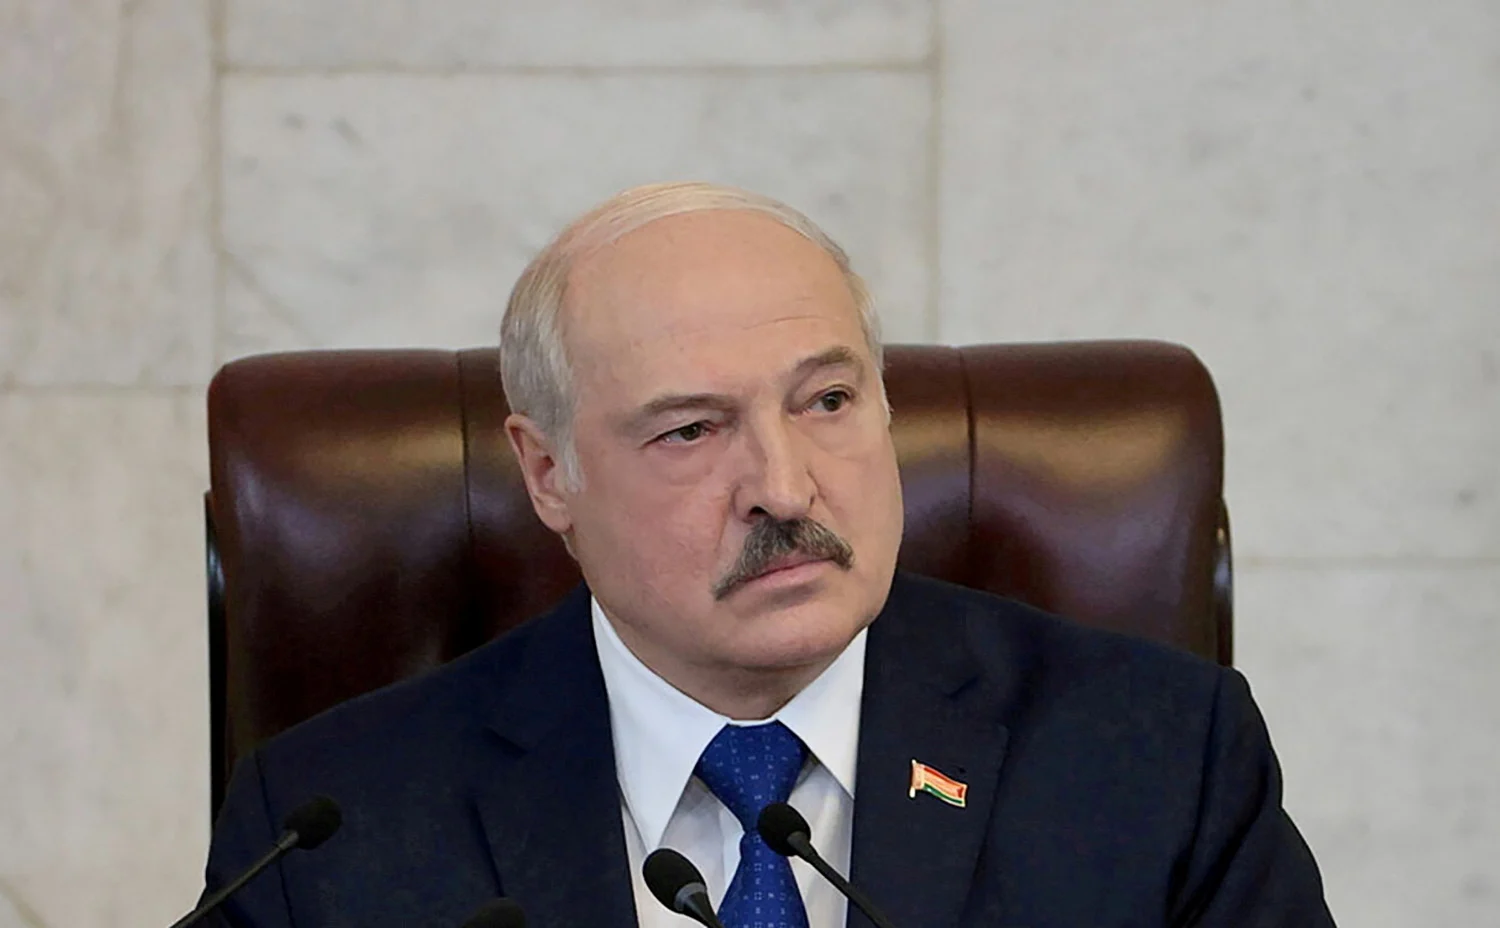 נשיא בלארוס אלכסנדר לוקשנקו